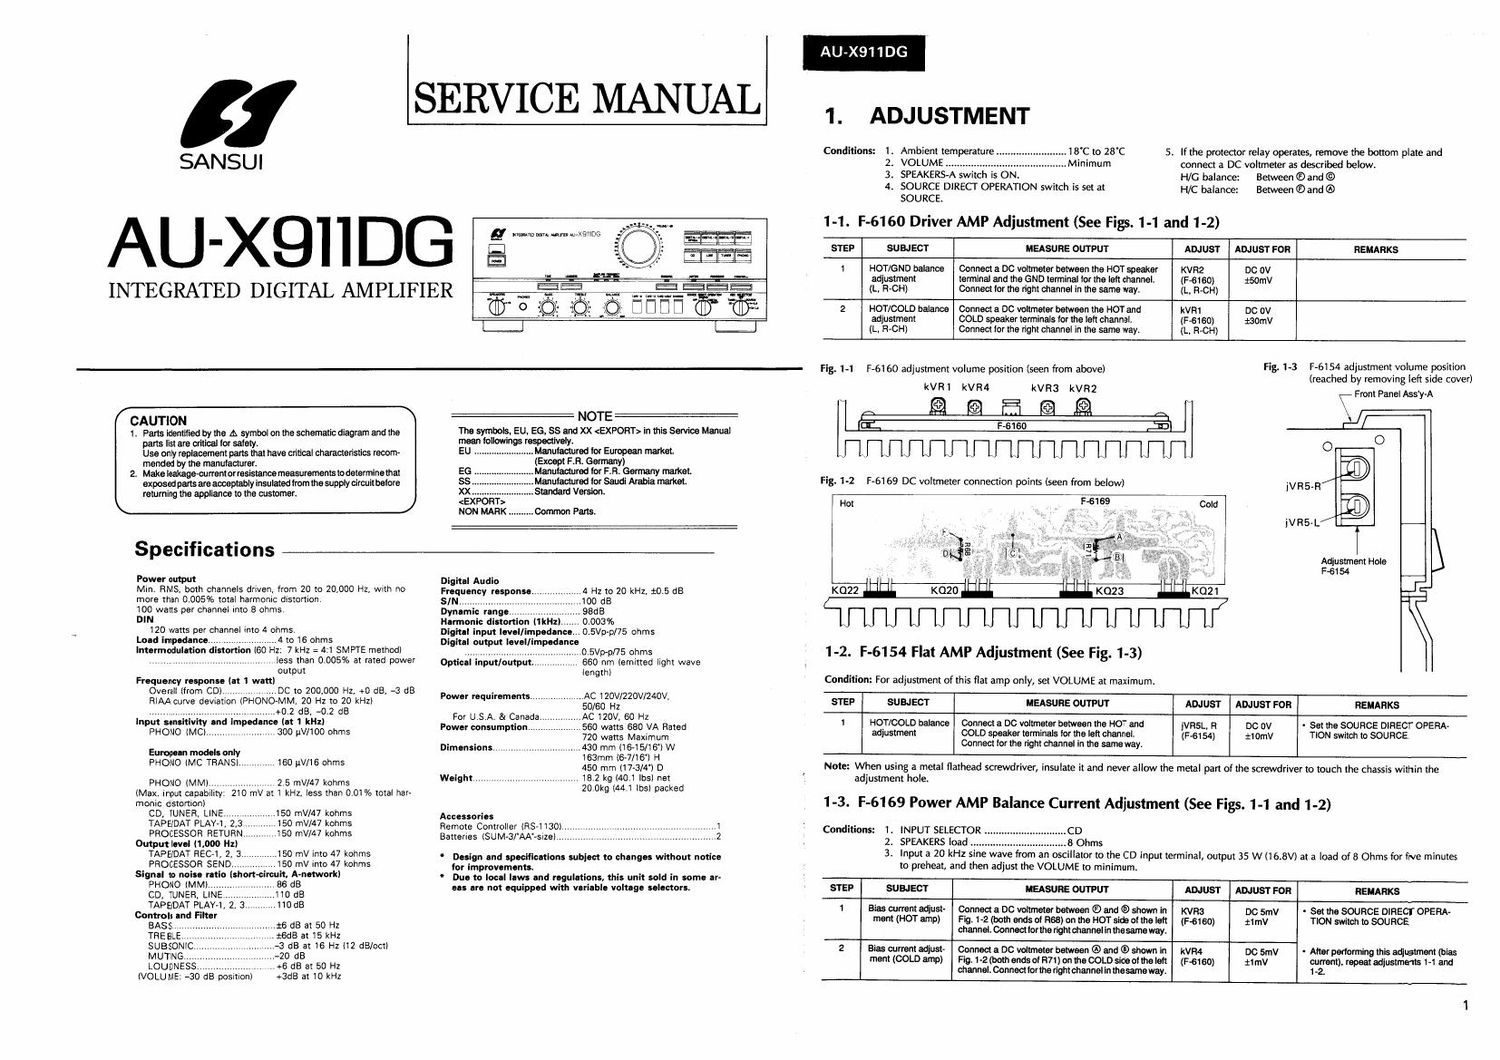 Sansui AUX 911 DG Service Manual